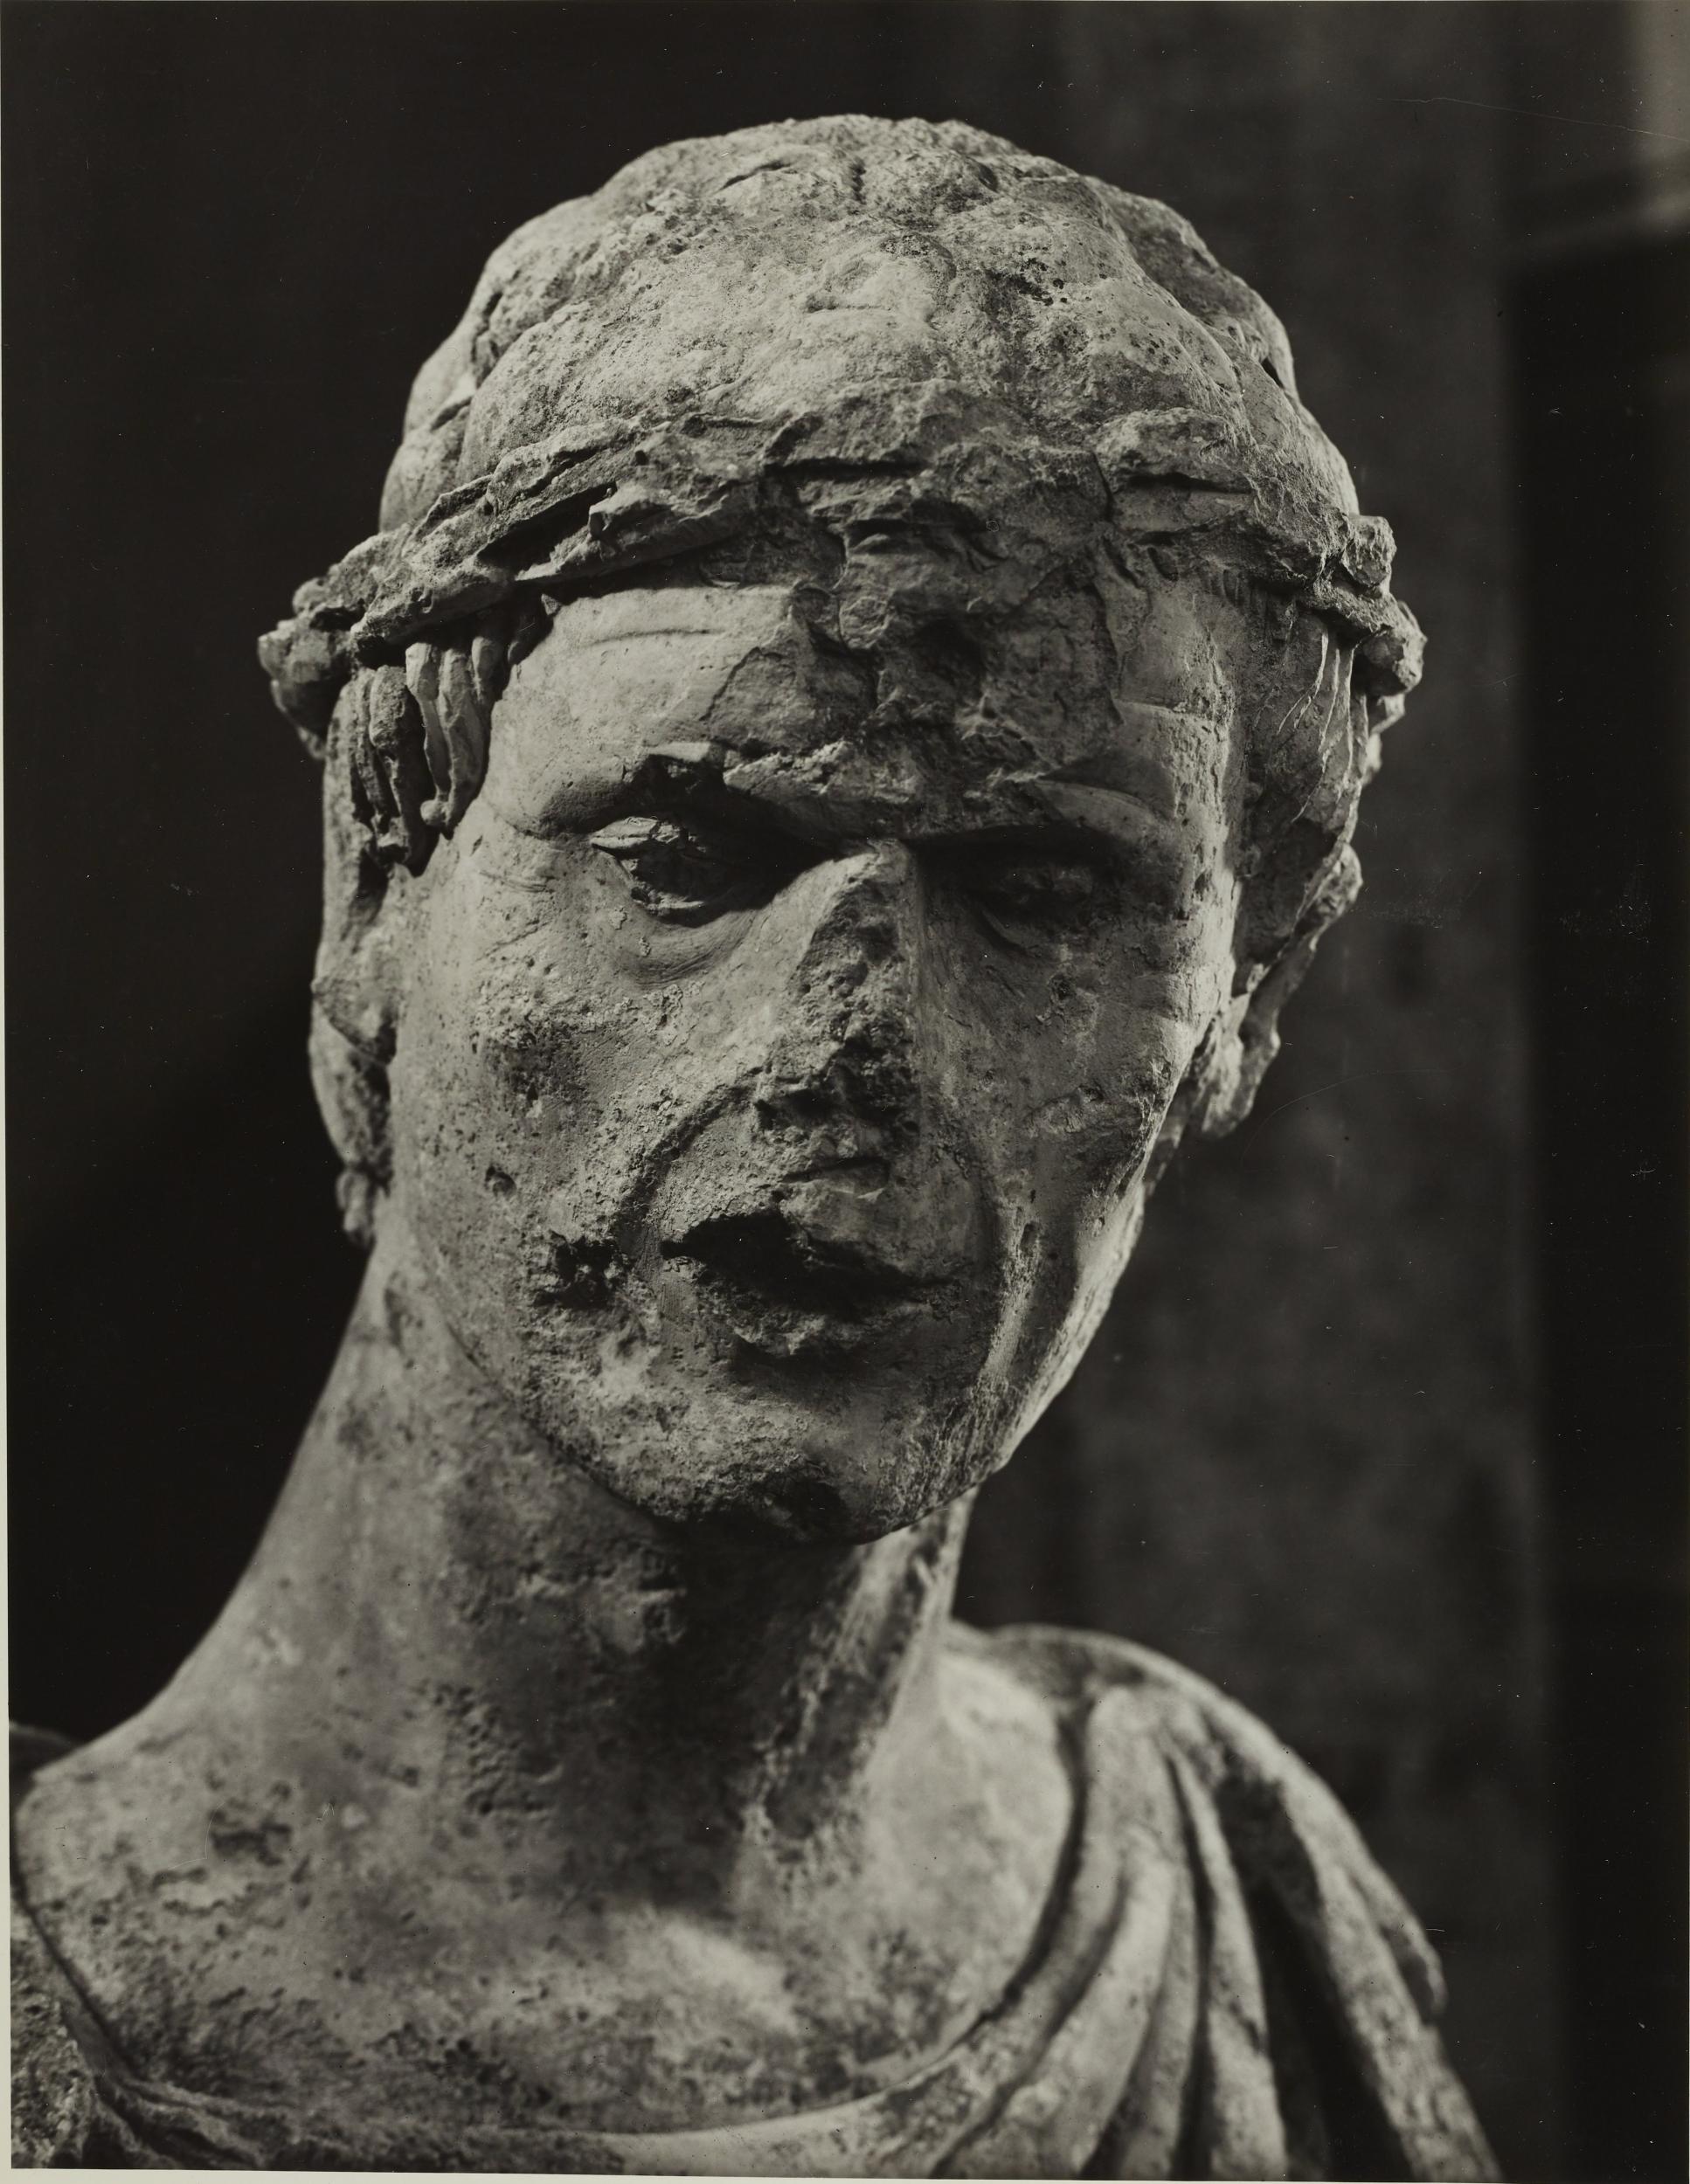 Fotografo non identificato, Barletta - Castello, Museo Civico, busto detto di Federico II, 1953–1954, gelatina ai sali d'argento/carta, MPI6023059